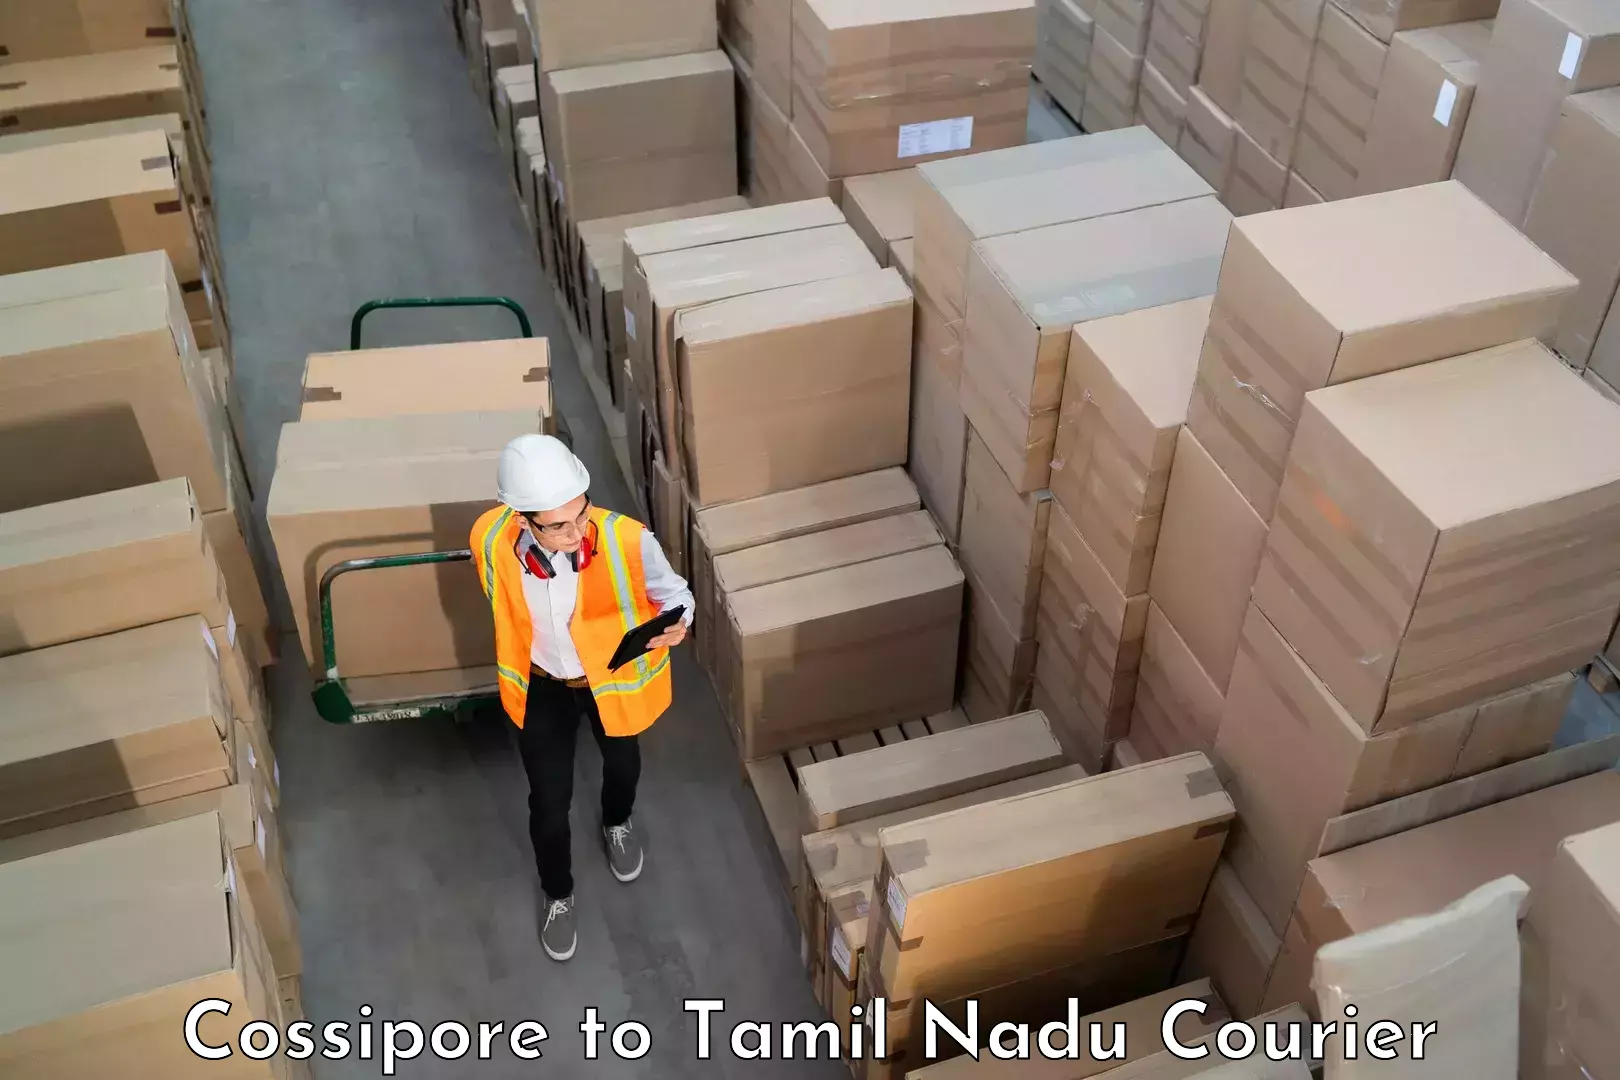 Luggage delivery optimization in Cossipore to Madurai